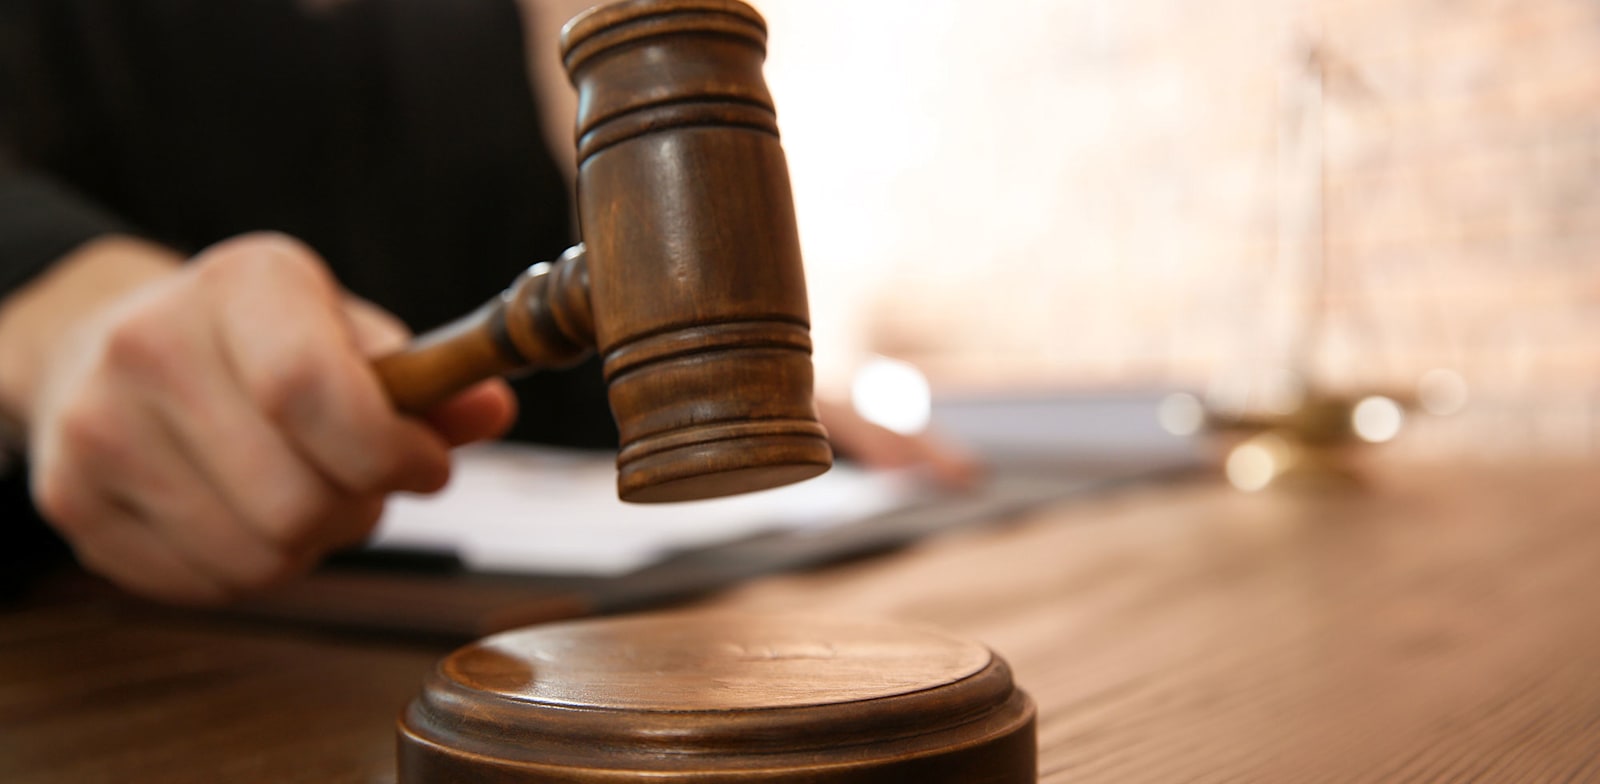 בית המשפט. על עורכת הדין הוטלו הוצאות משפט בגובה של 100 אלף שקל / צילום: Shutterstock